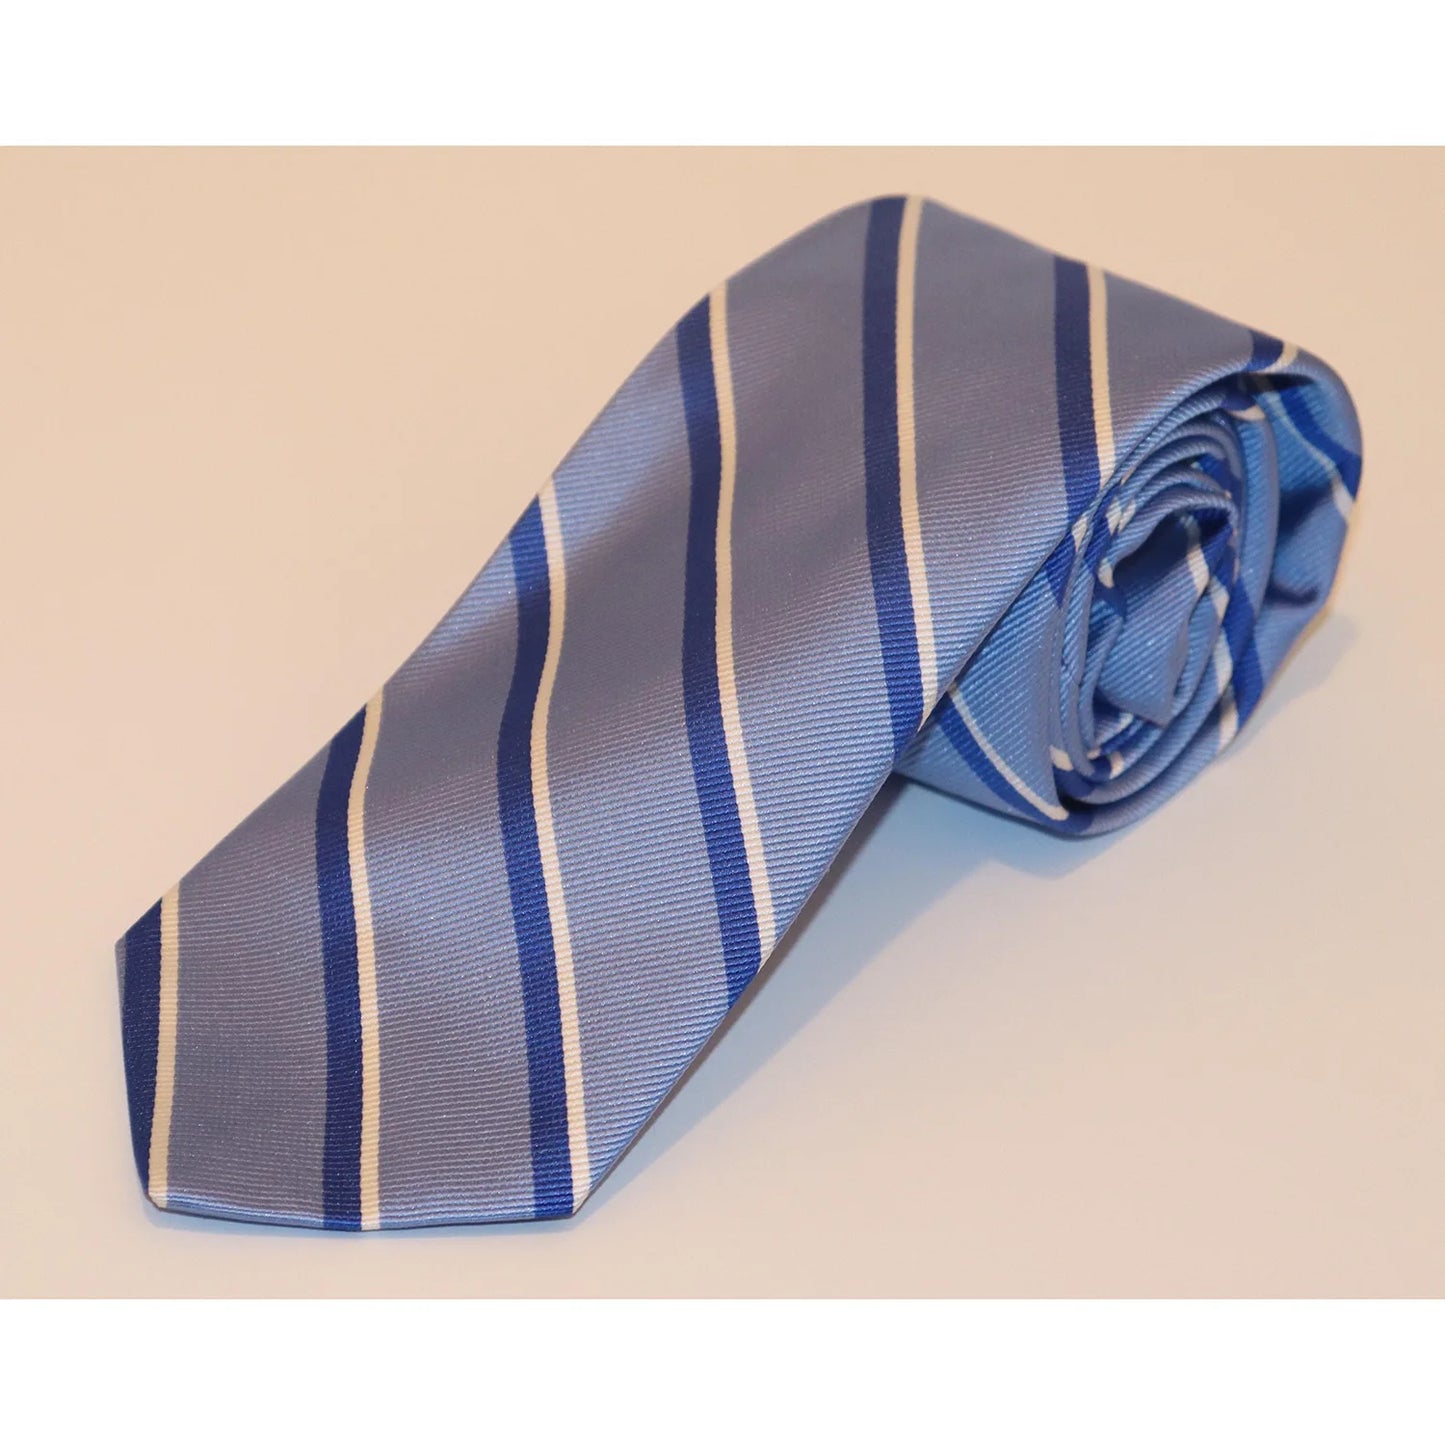 R Hanauer Tie - Blue/White Stripe